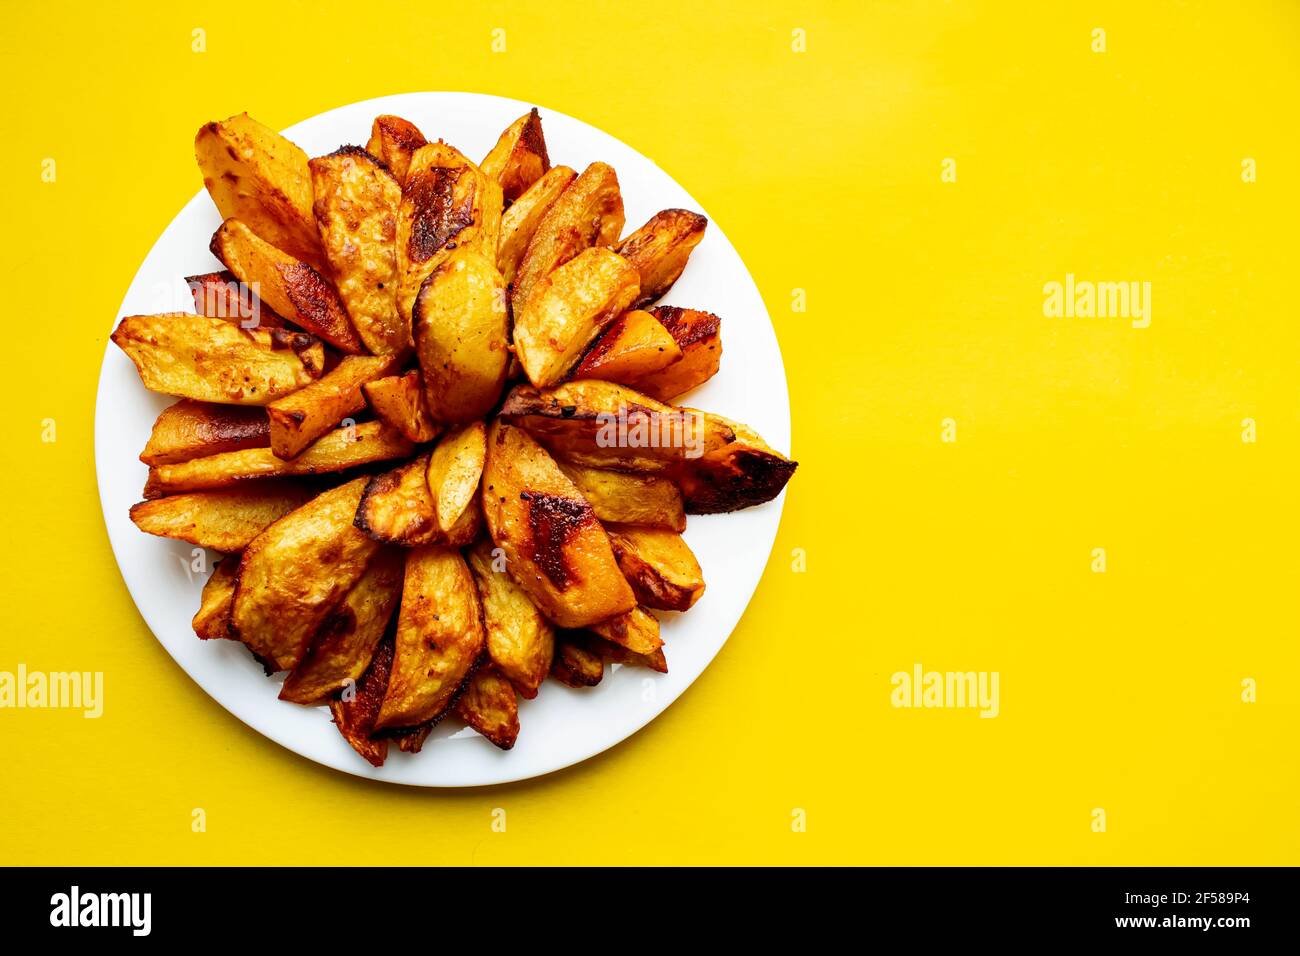 Gebratene Pommes und Tomatensauce auf gelbem Hintergrund. Fast Food. Rustikale Kartoffeln im Ofen gebacken. In Scheiben geschnittene und gebratene Kartoffeln. Stockfoto